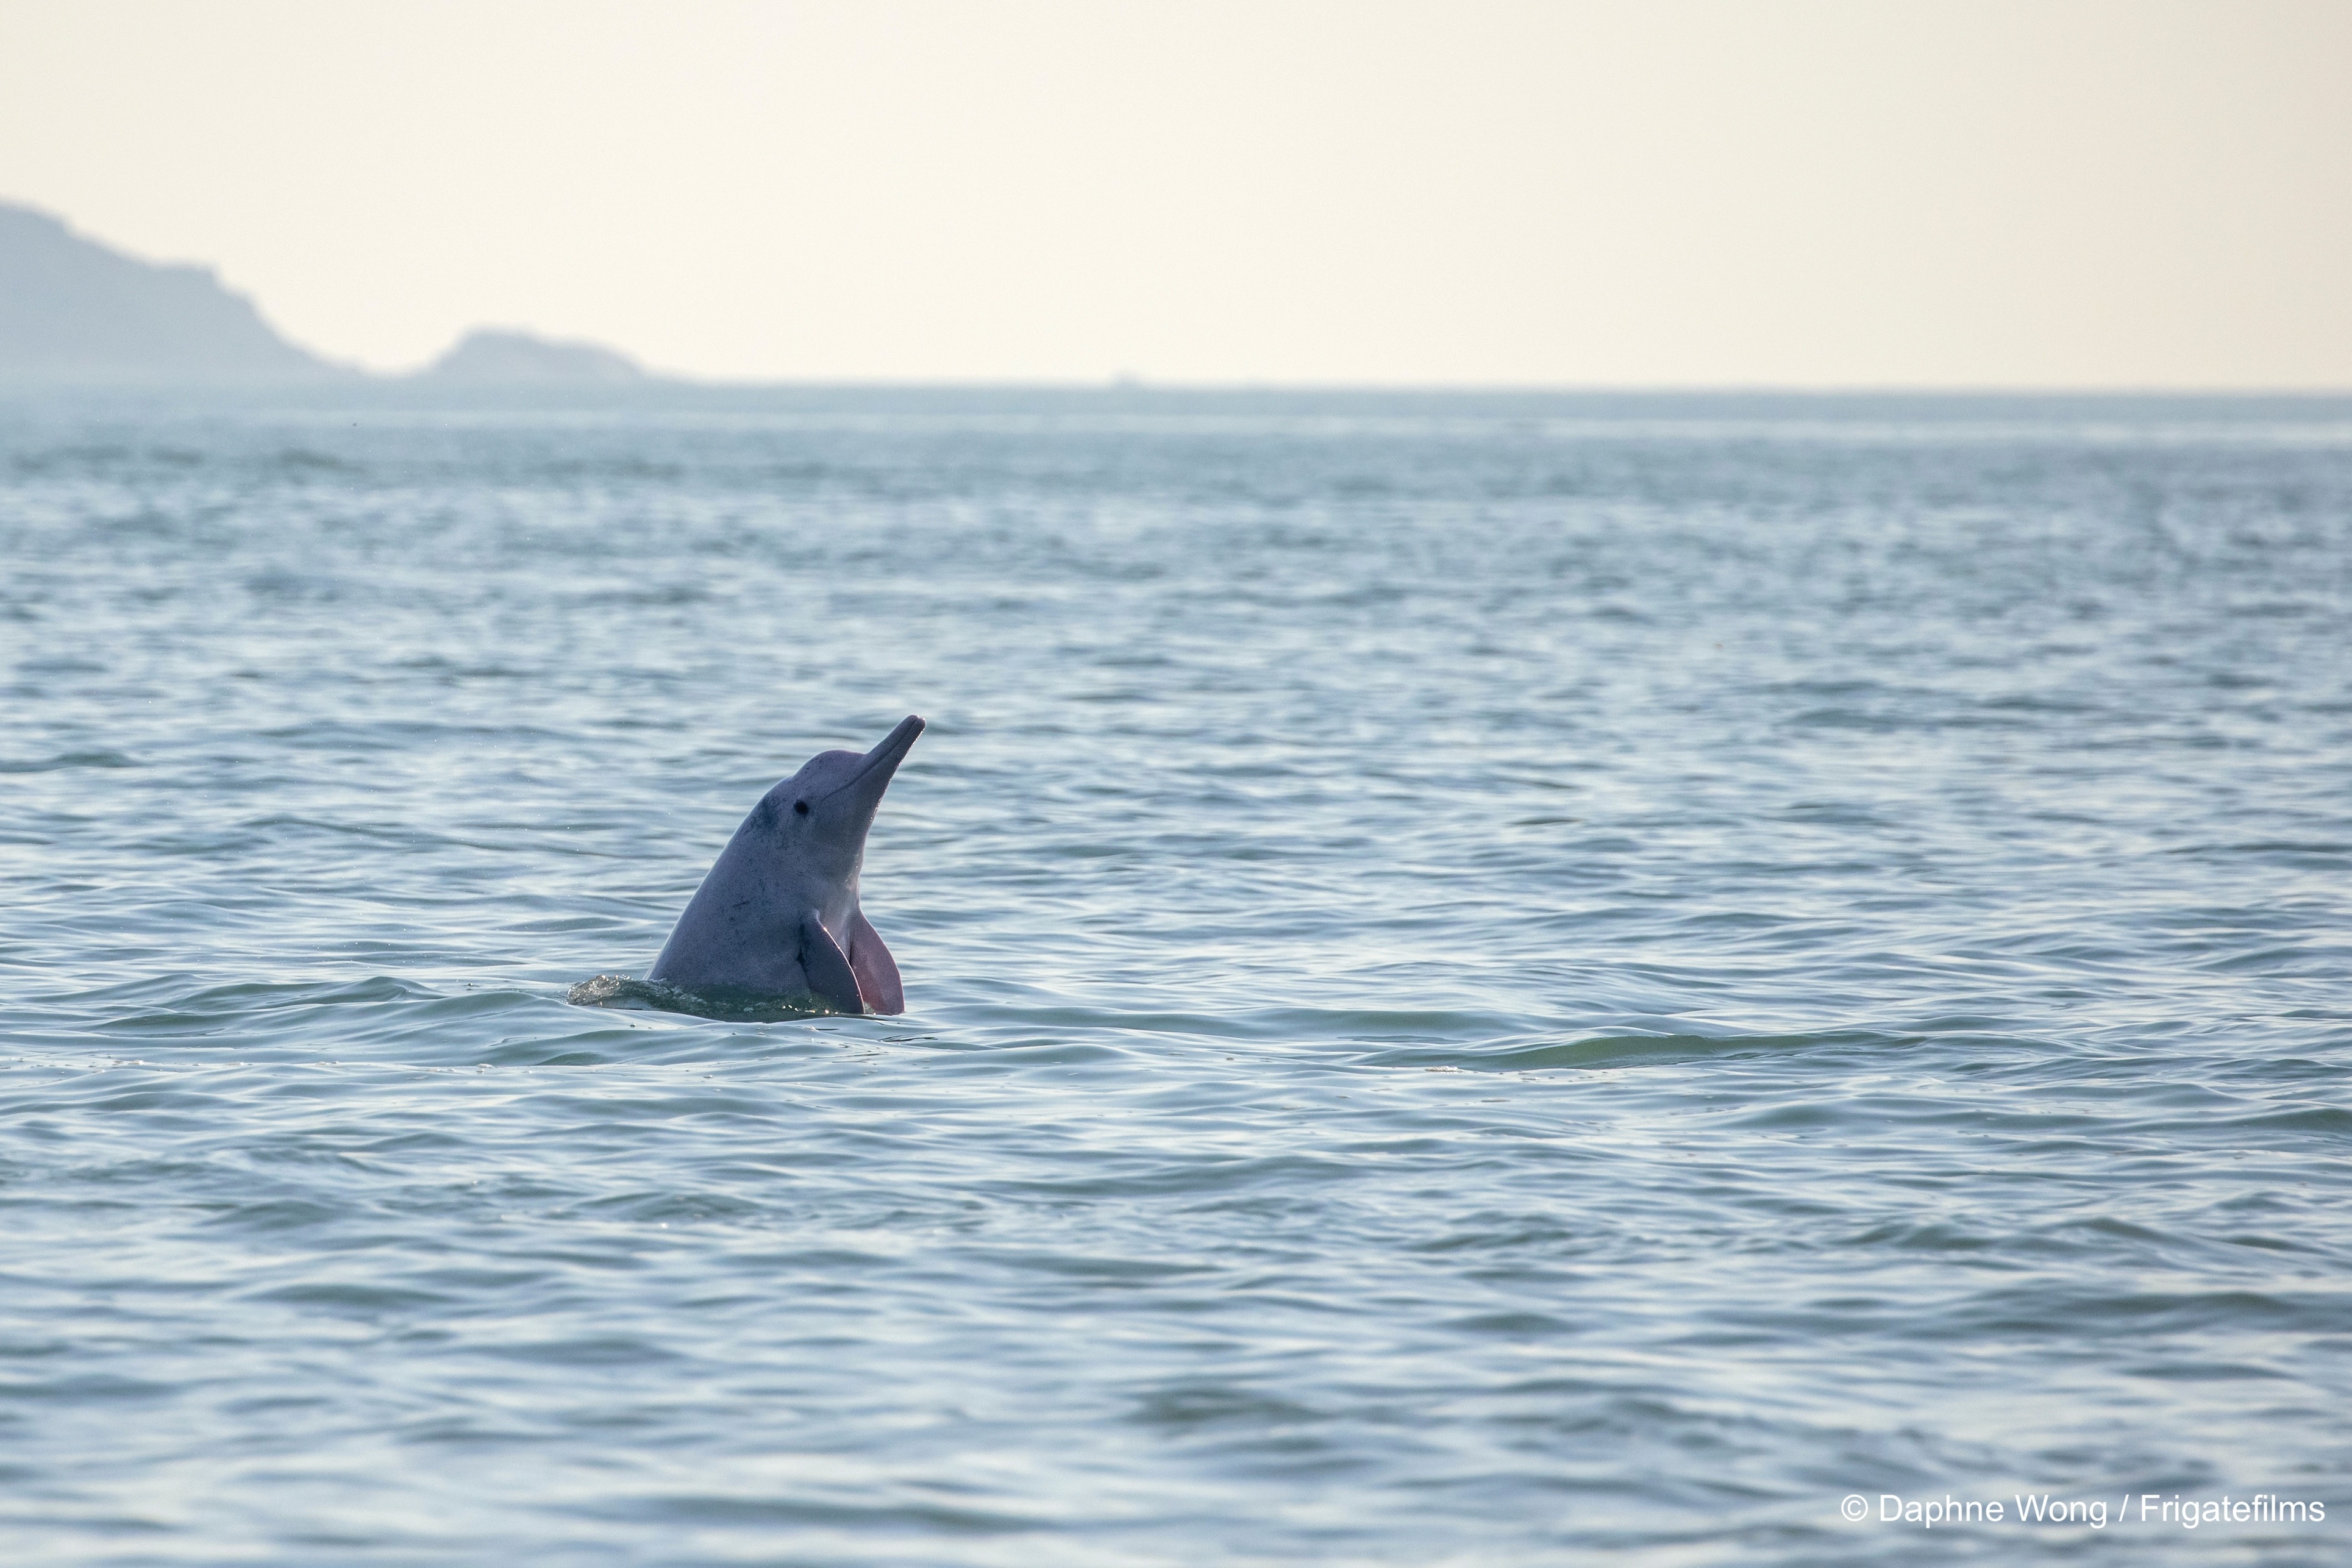 紀錄片揭示水底噪音
 人為威脅中華白海豚